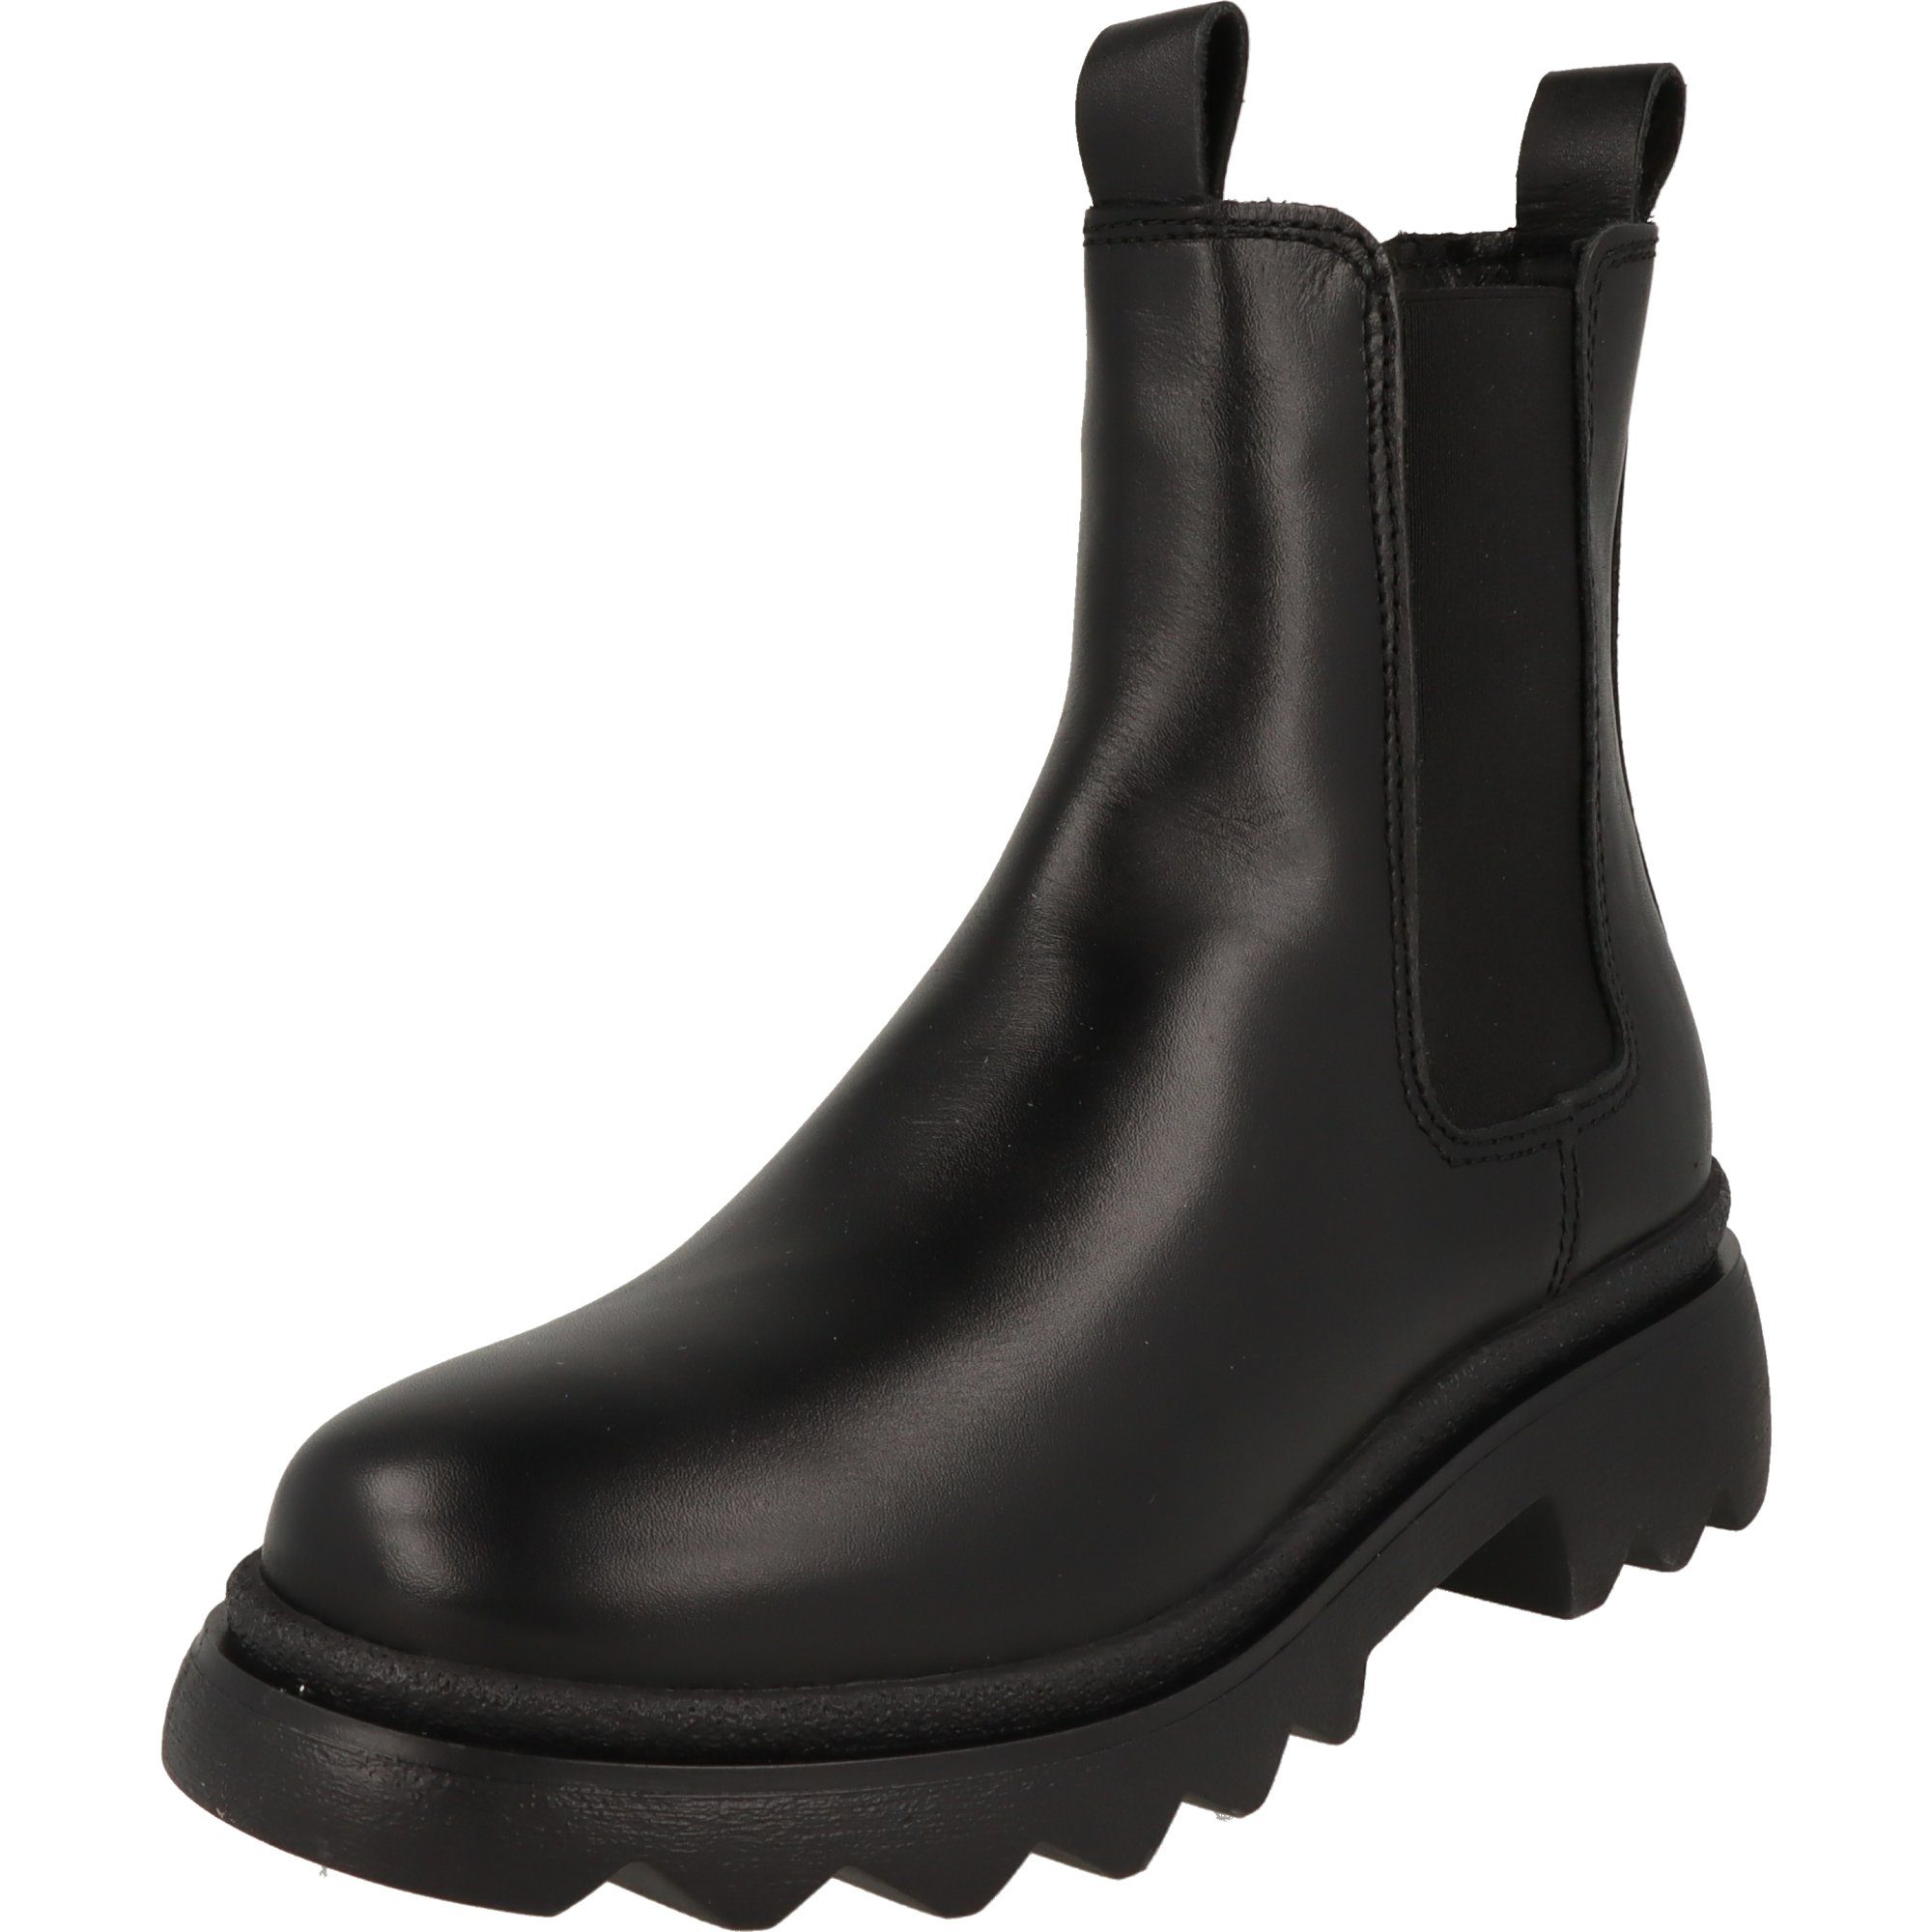 Tamaris 1-25802-41 schlichte Damen Schuhe Leder Stiefel Chelseaboots gepolstert schwarz